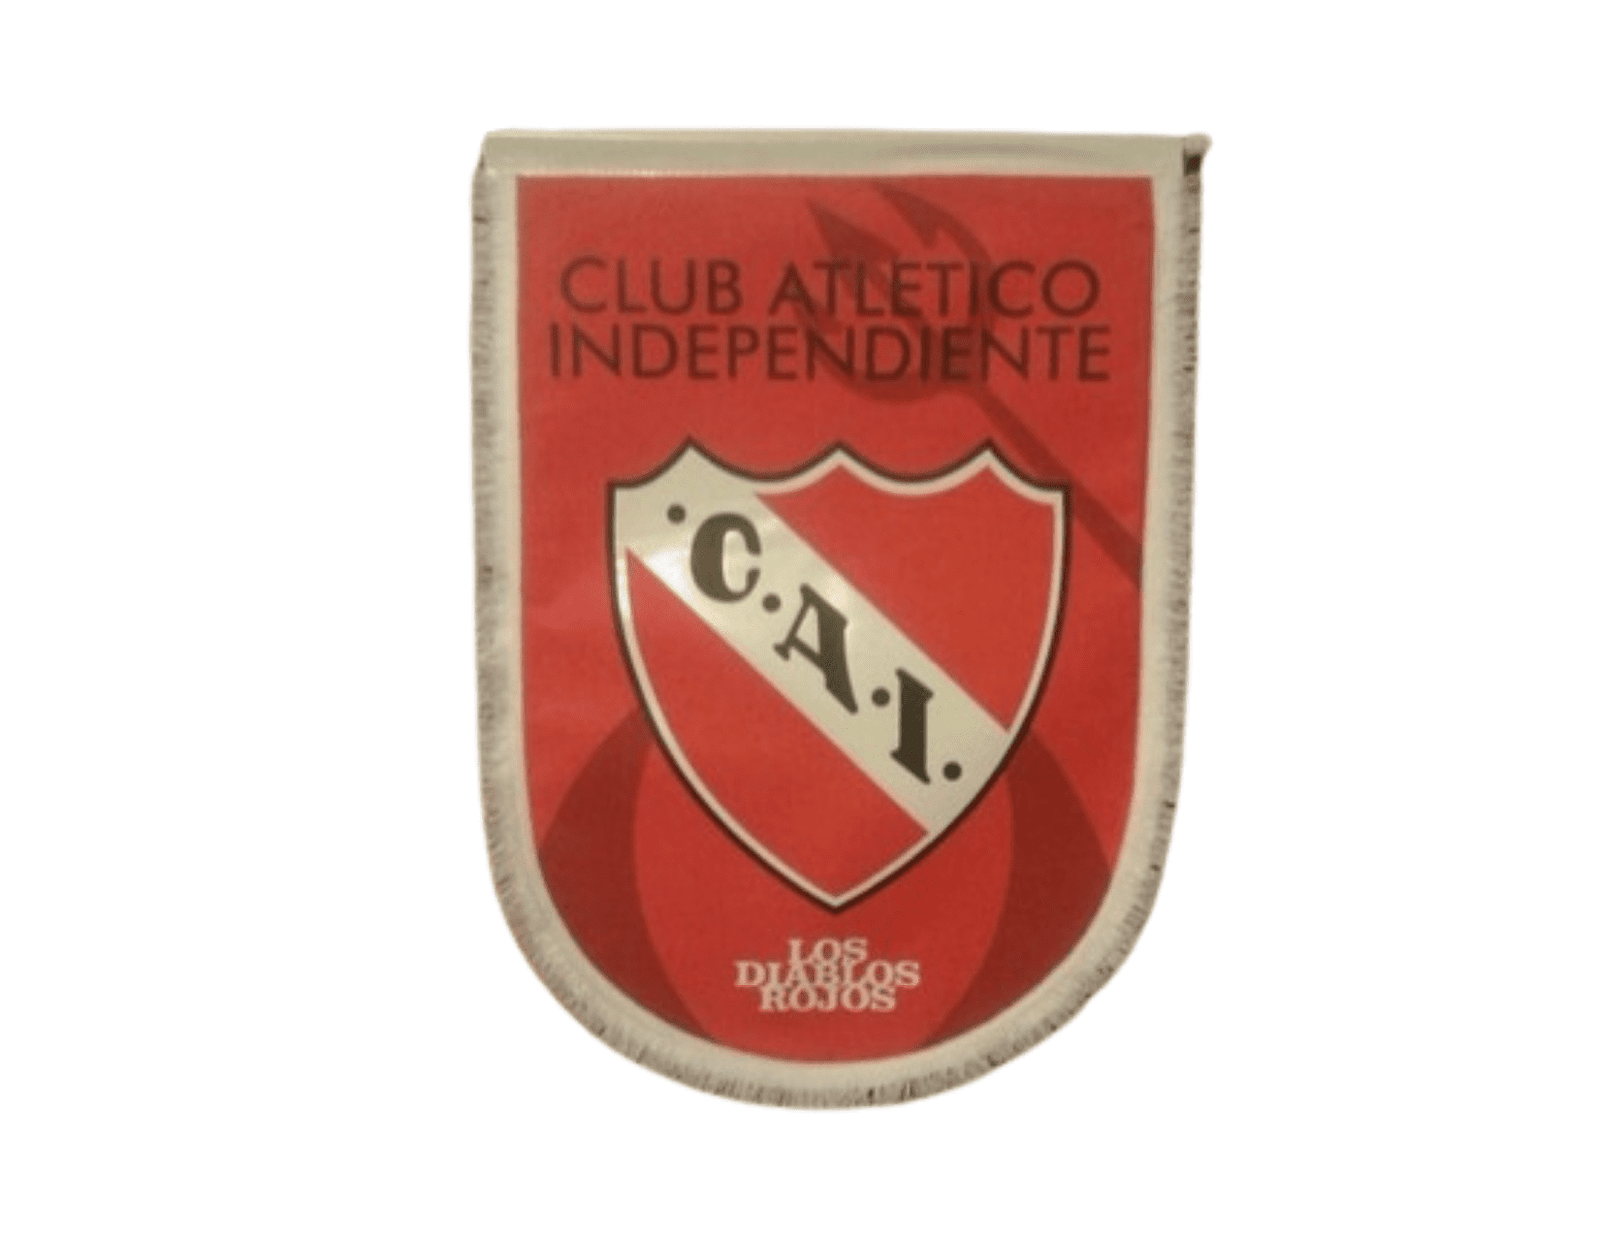 ⚽ Circuito #AvellanedaCapitalNacionalDelFútbol - Club Atlético Independiente  🔴 Actividad gratuita - Cupos limitados Este sábado podés…